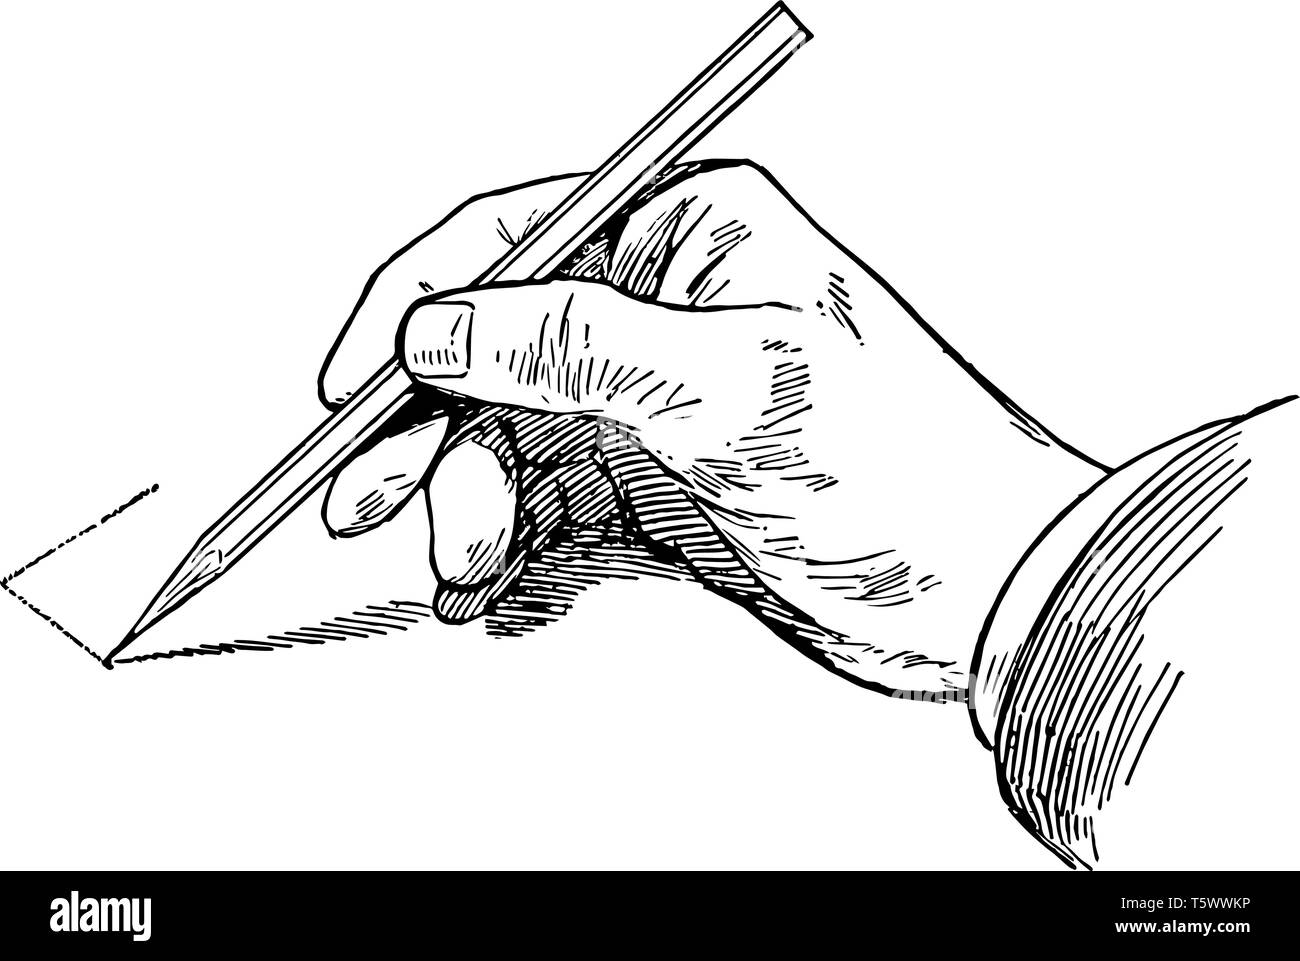 Skizzieren vertikale Linie mit dem Bleistift mit Freiheit Winkel der Geraden gehalten zu vielfachen in horizontaler oder vertikaler Richtung vin einrasten Stock Vektor